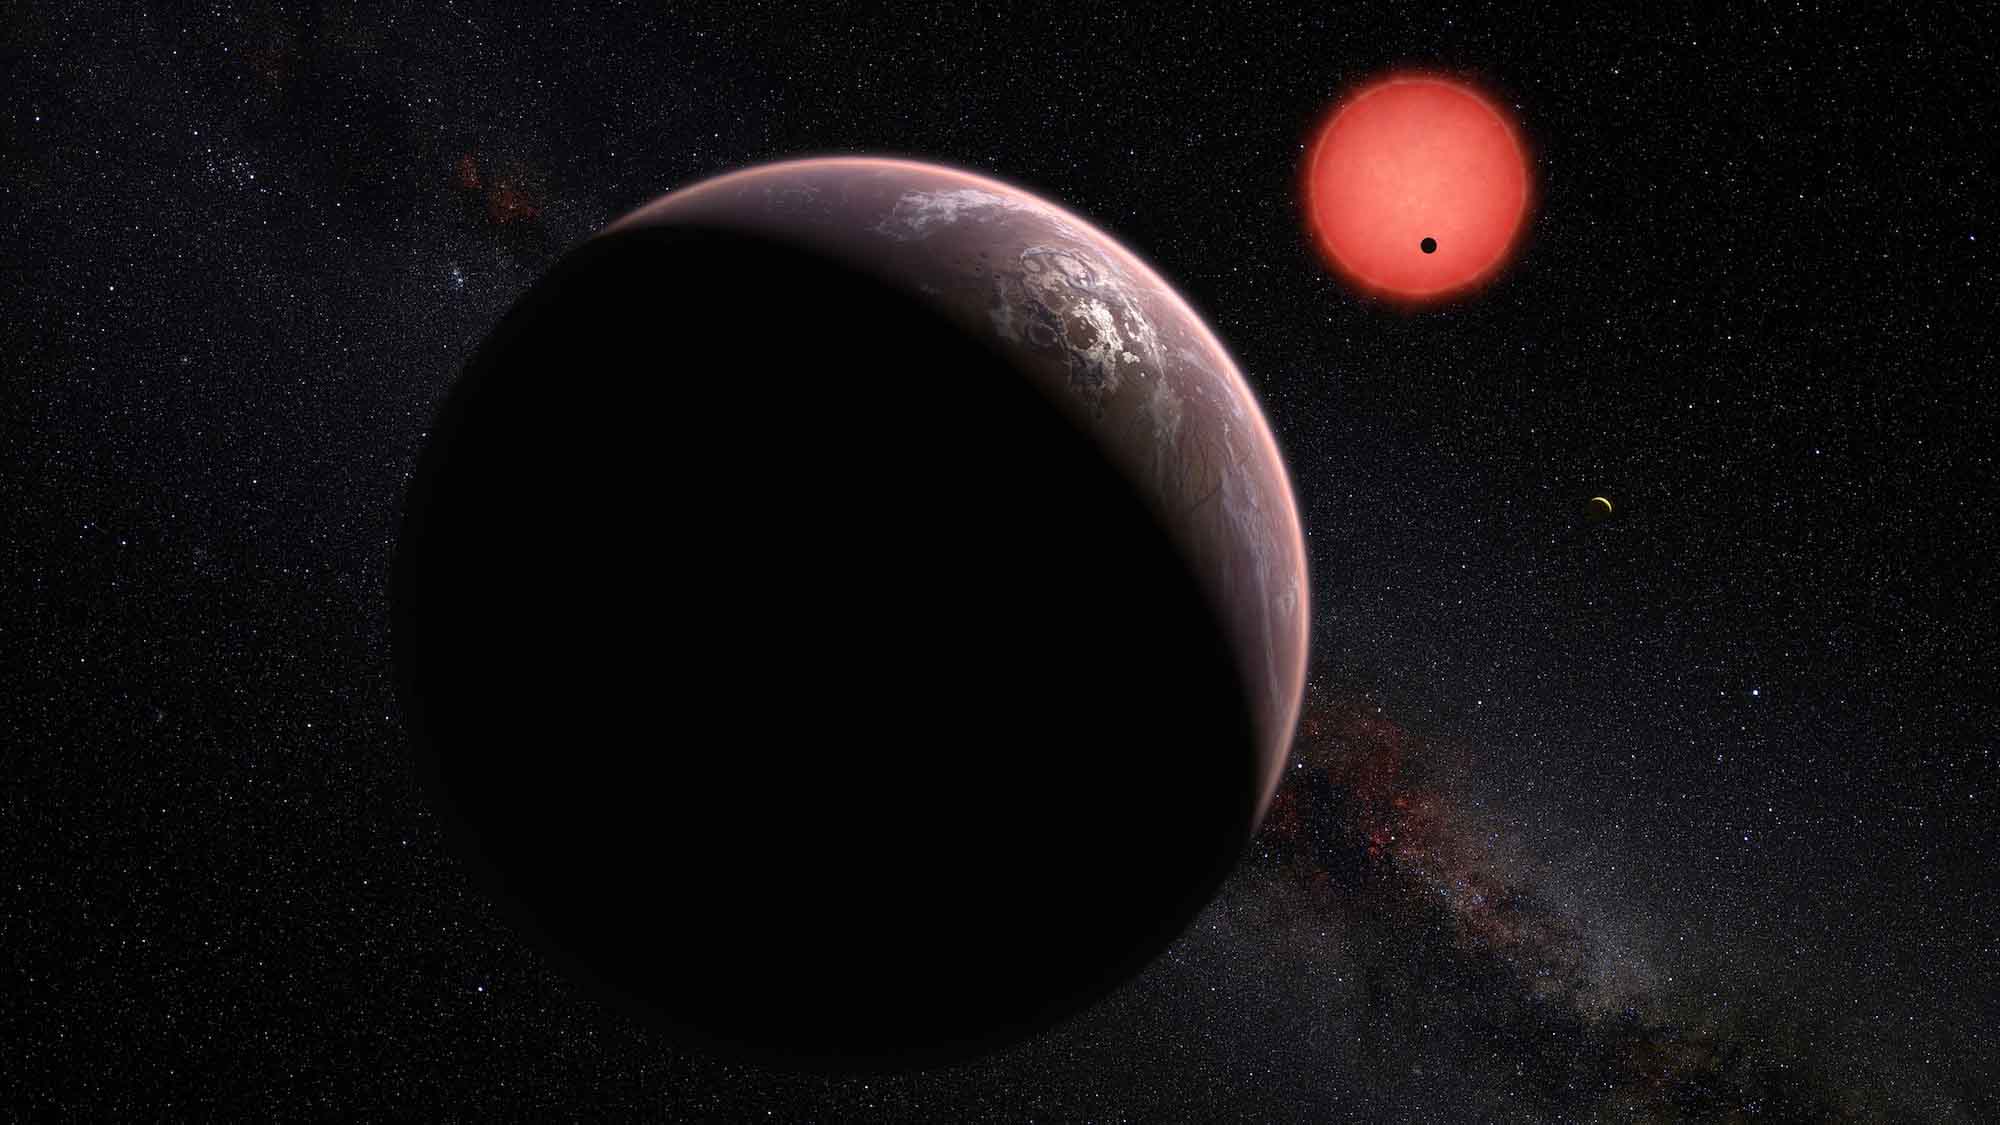 David M. Kipping de la Universidad de Columbia junto a su equipo, detectaron una posible exoluna orbitando el sistema Kepler-1625